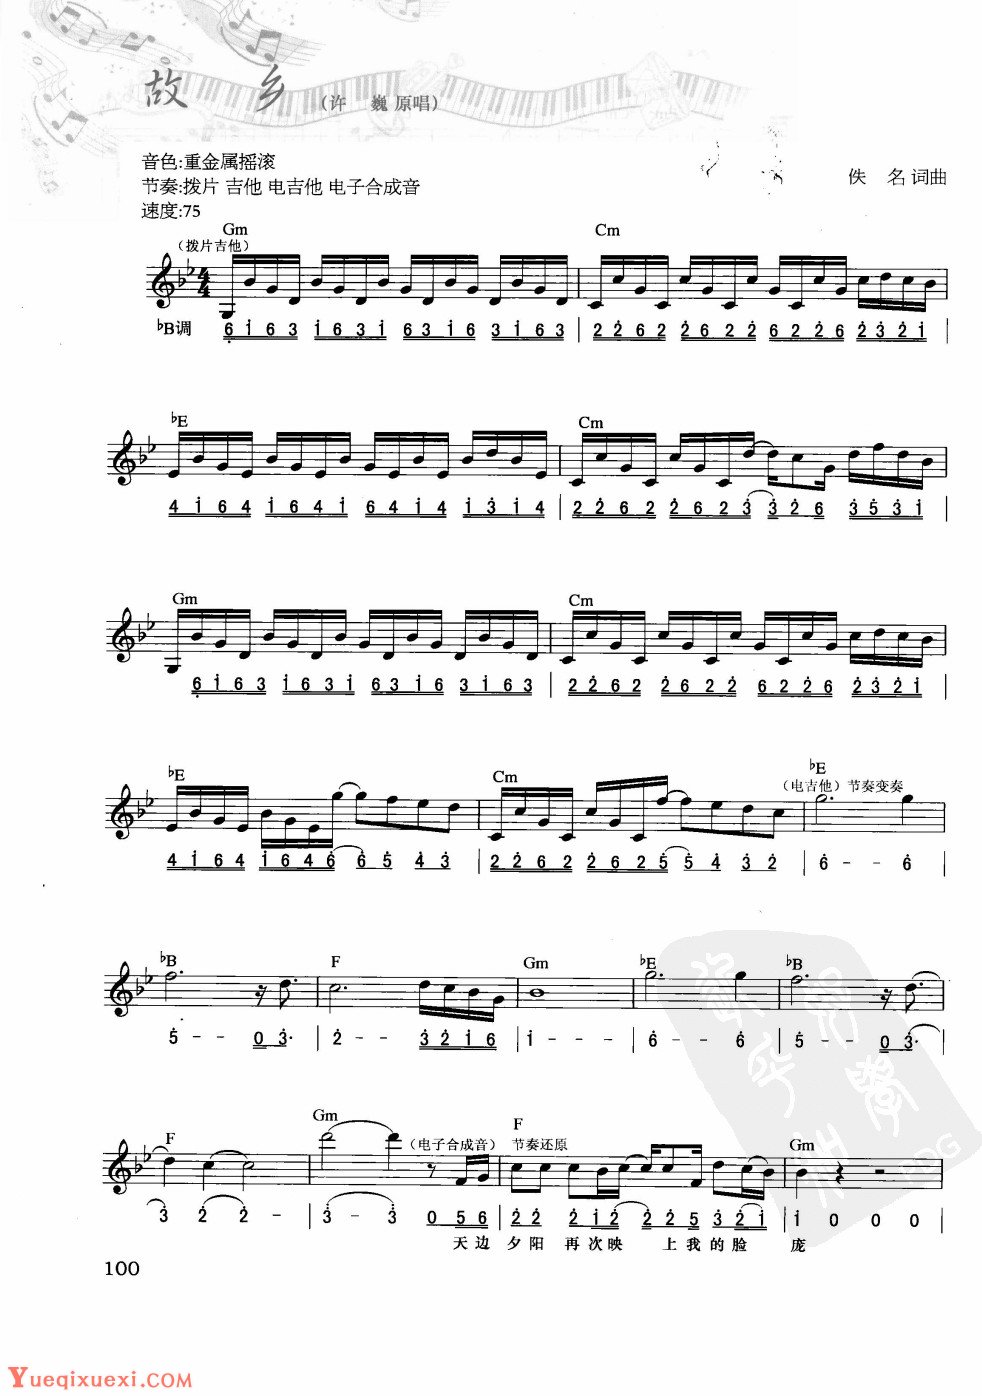 电子琴弹唱乐曲谱【故乡】简谱与五线谱对照 附和弦标记